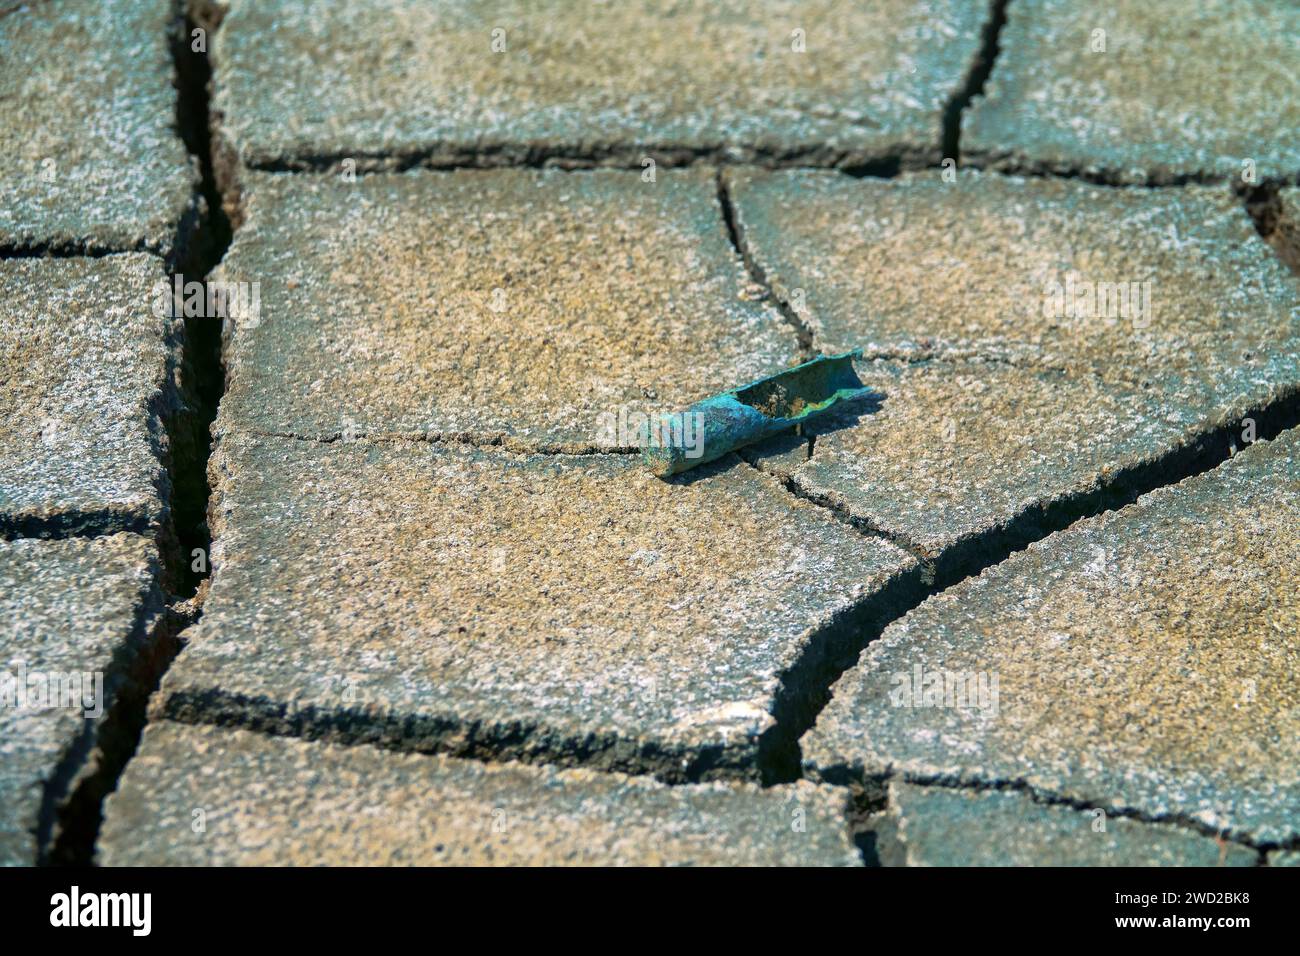 Nach dem Krieg. Deutsche Karabiner-(Gewehr-)Rostkartusche aus dem Zweiten Weltkrieg am Boden eines ausgetrockneten Stausees Stockfoto